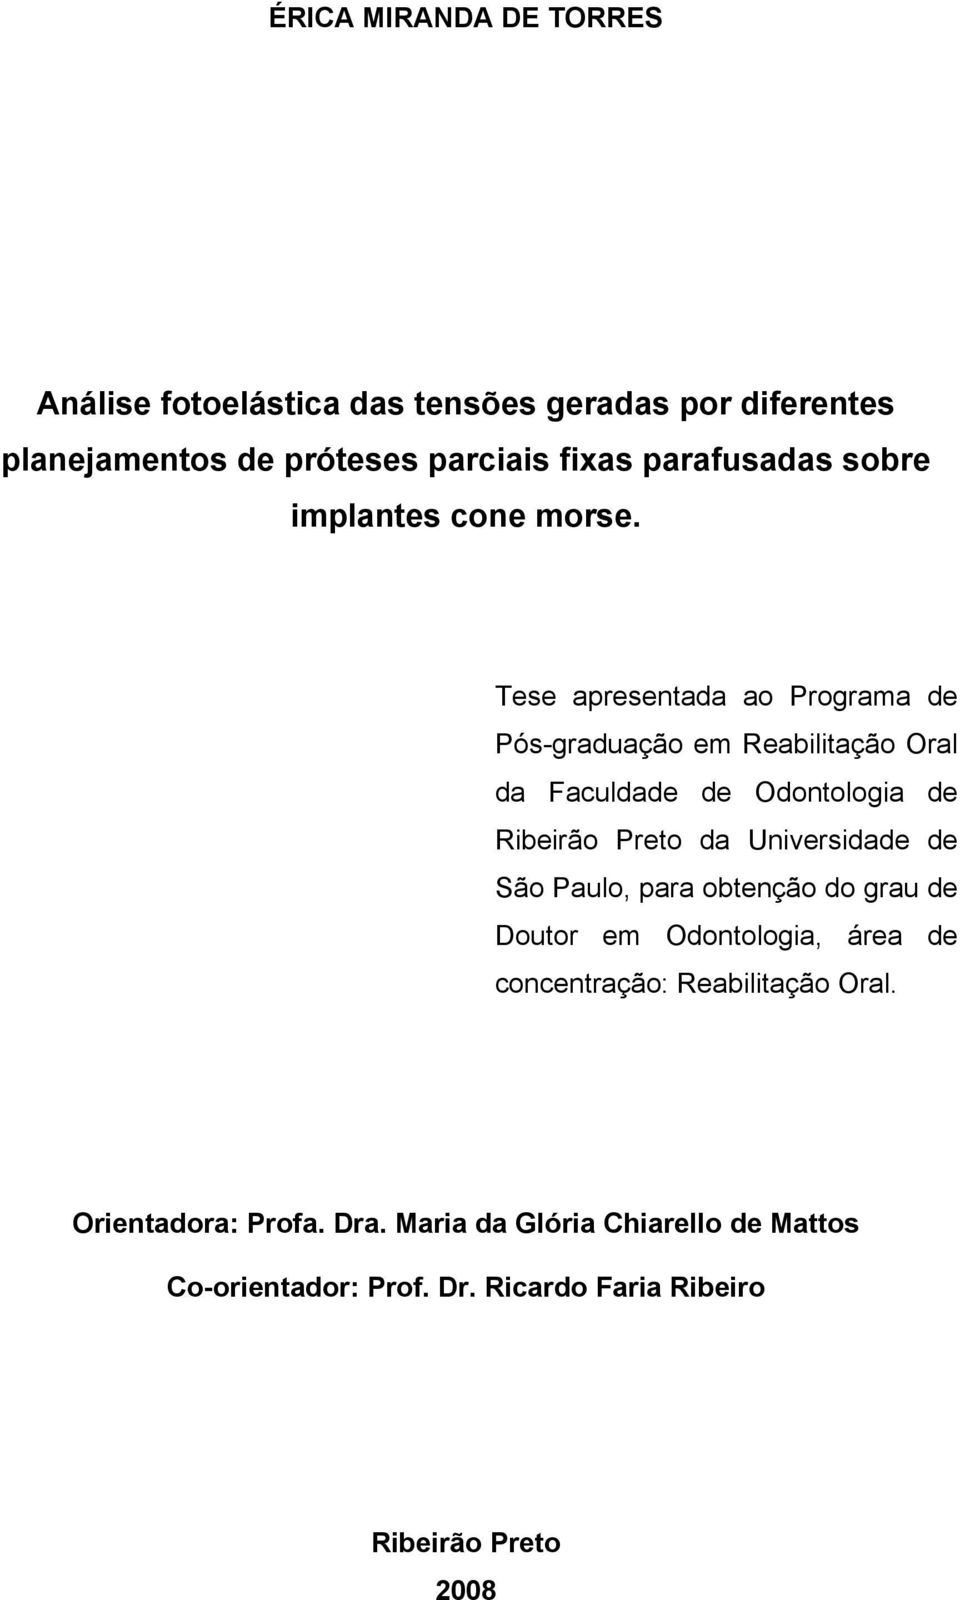 Tese apresentada ao Programa de Pós-graduação em Reabilitação Oral da Faculdade de Odontologia de Ribeirão Preto da Universidade